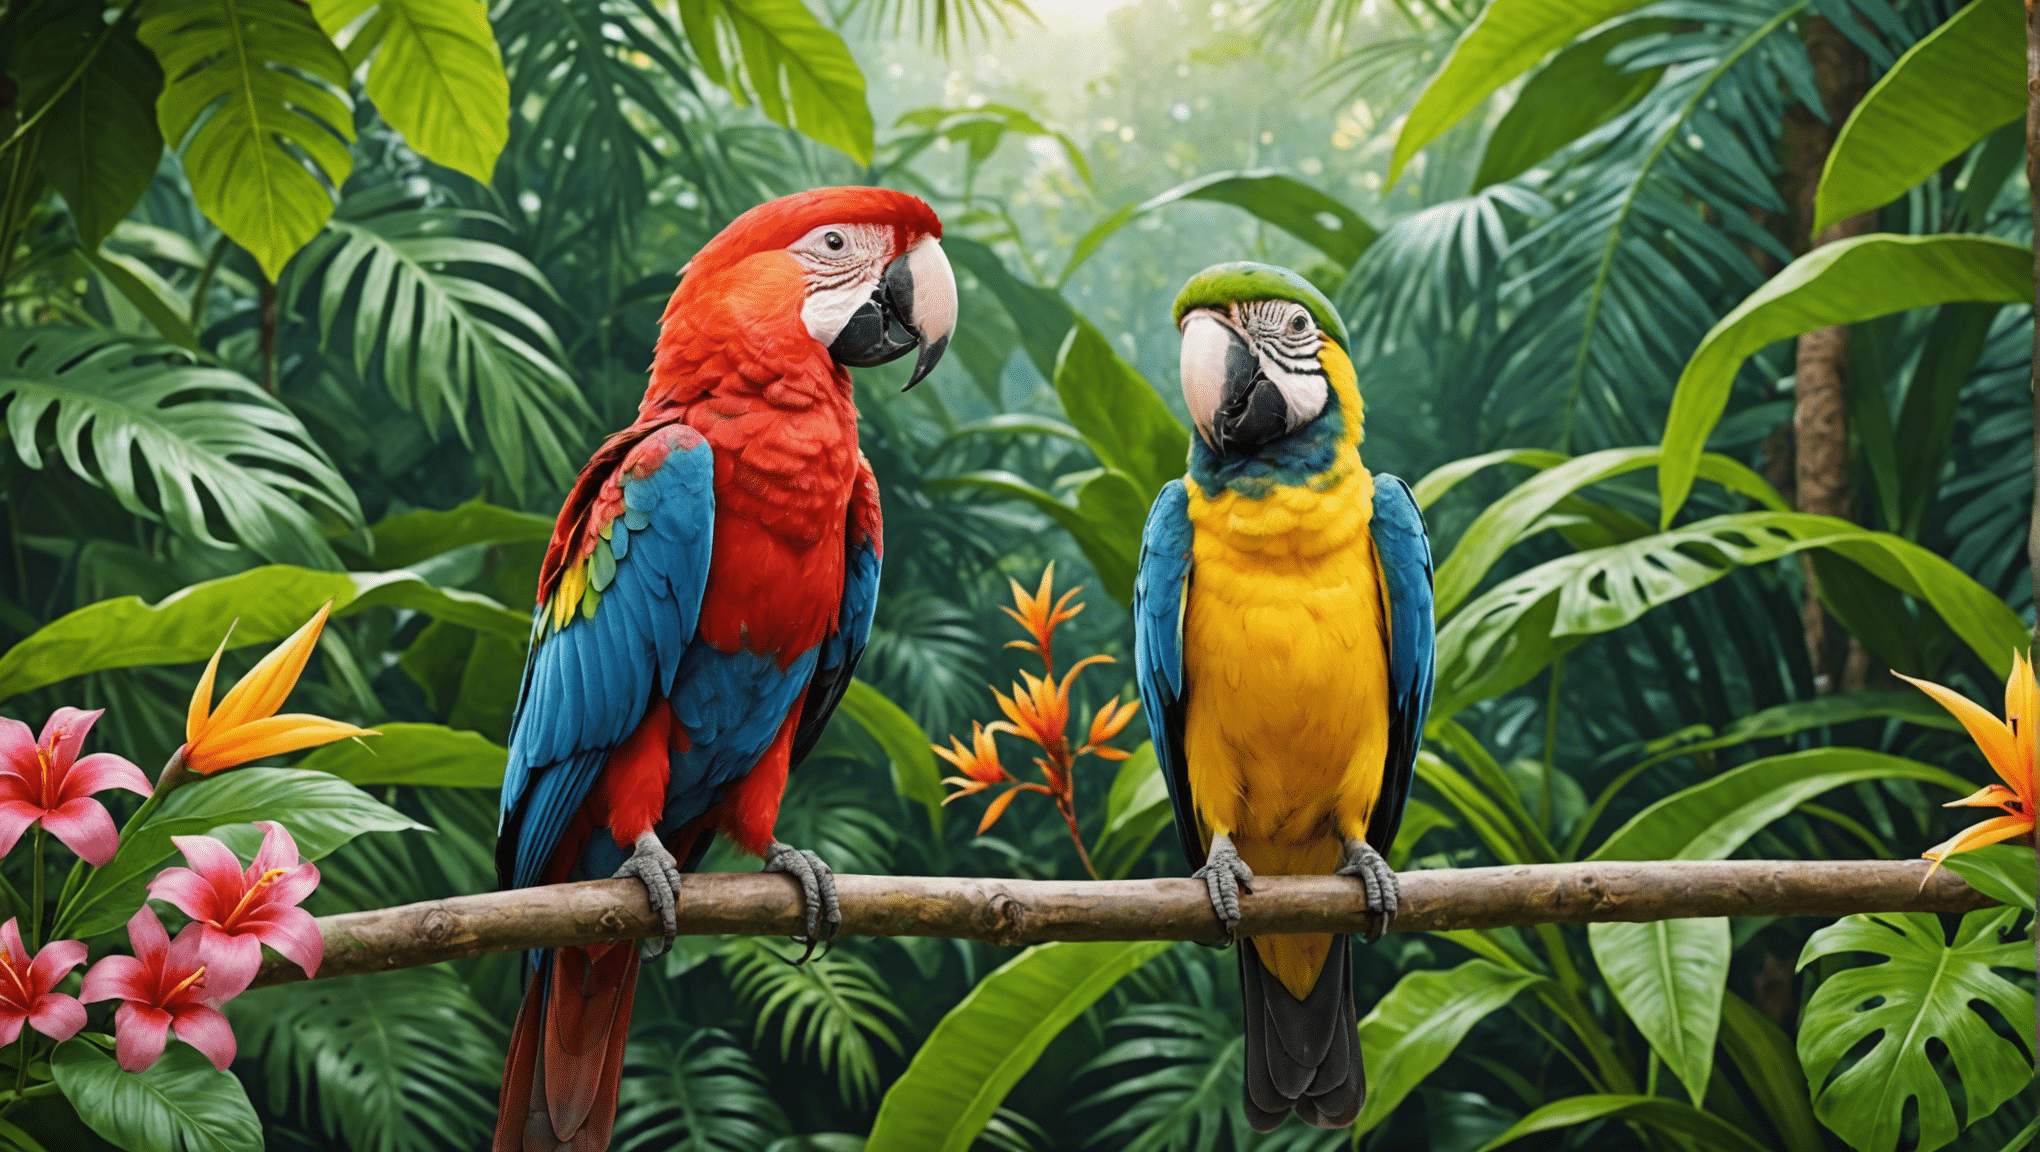 esplora l'incantevole mondo degli uccelli tropicali con la nostra affascinante raccolta di articoli e immagini.